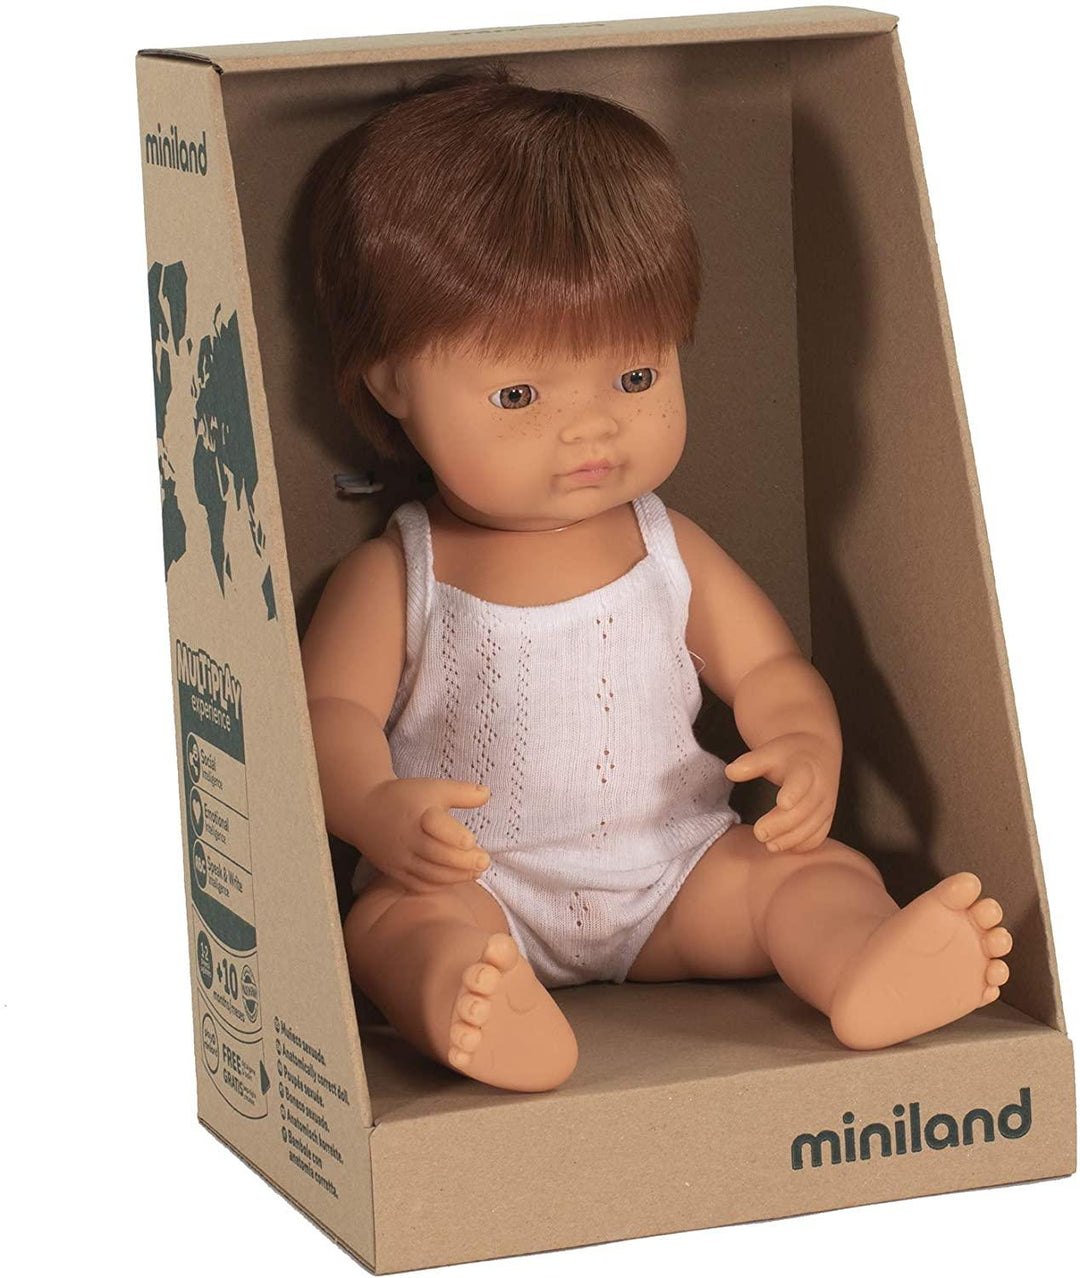 Miniland Doll - Caucasian Boy - Red Hair - 38cm